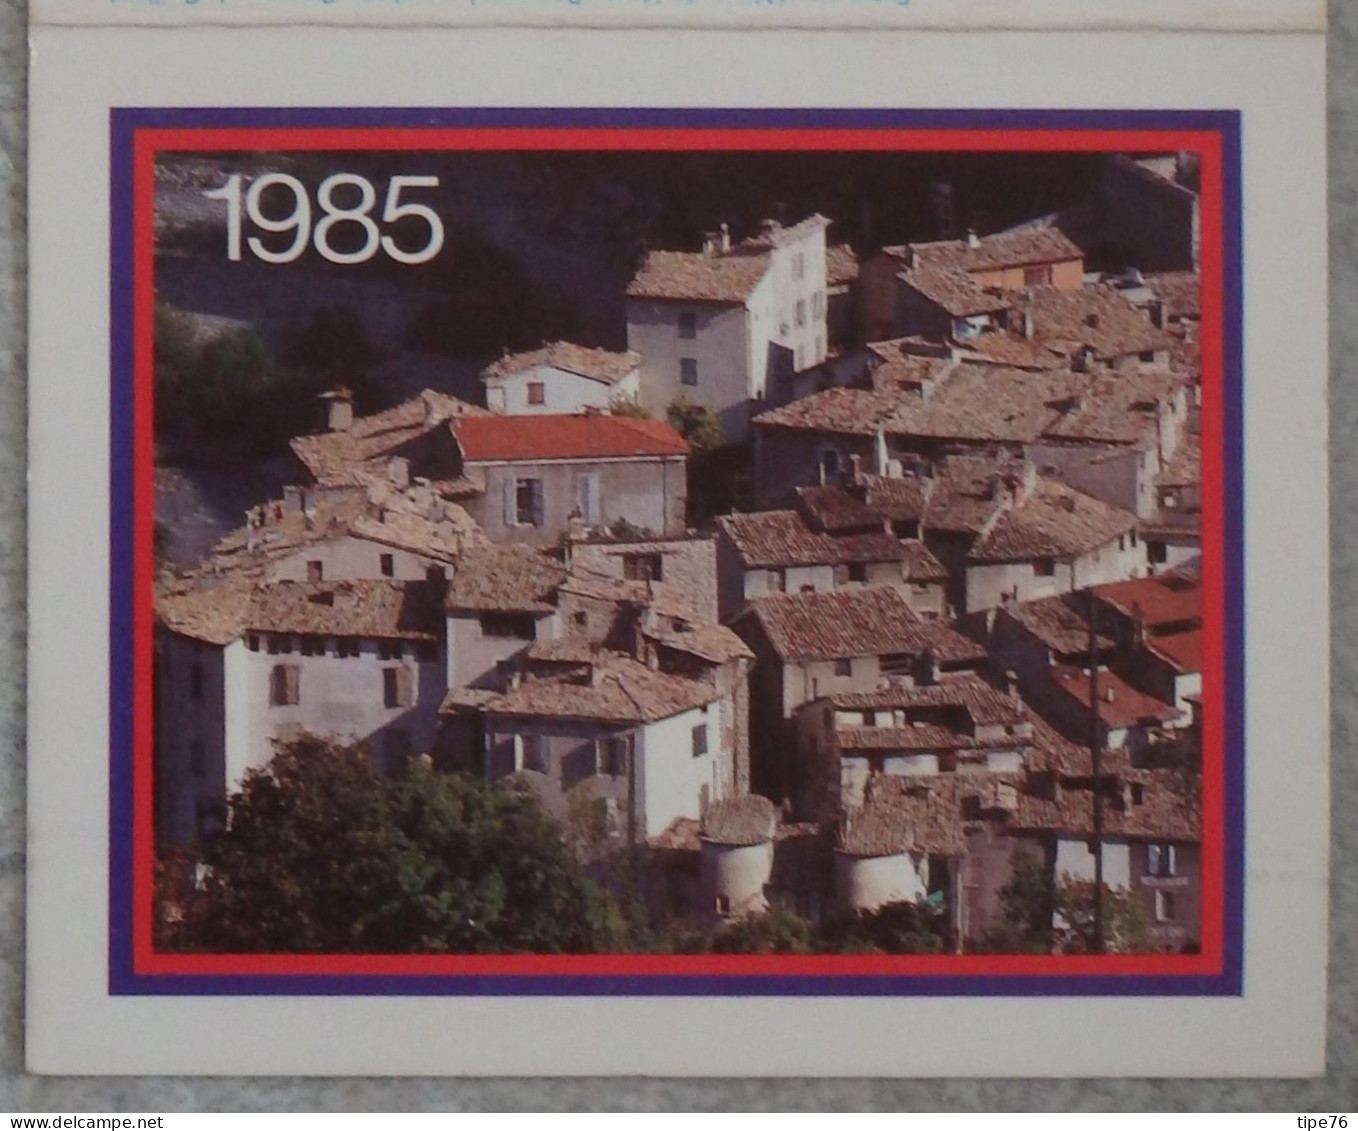 Petit Calendrier De Poche 1985 Entrevaux Alpes De Haute Provence - Centre Transfusion Sanguine Rennes Ille Et Vilaine - Small : 1981-90